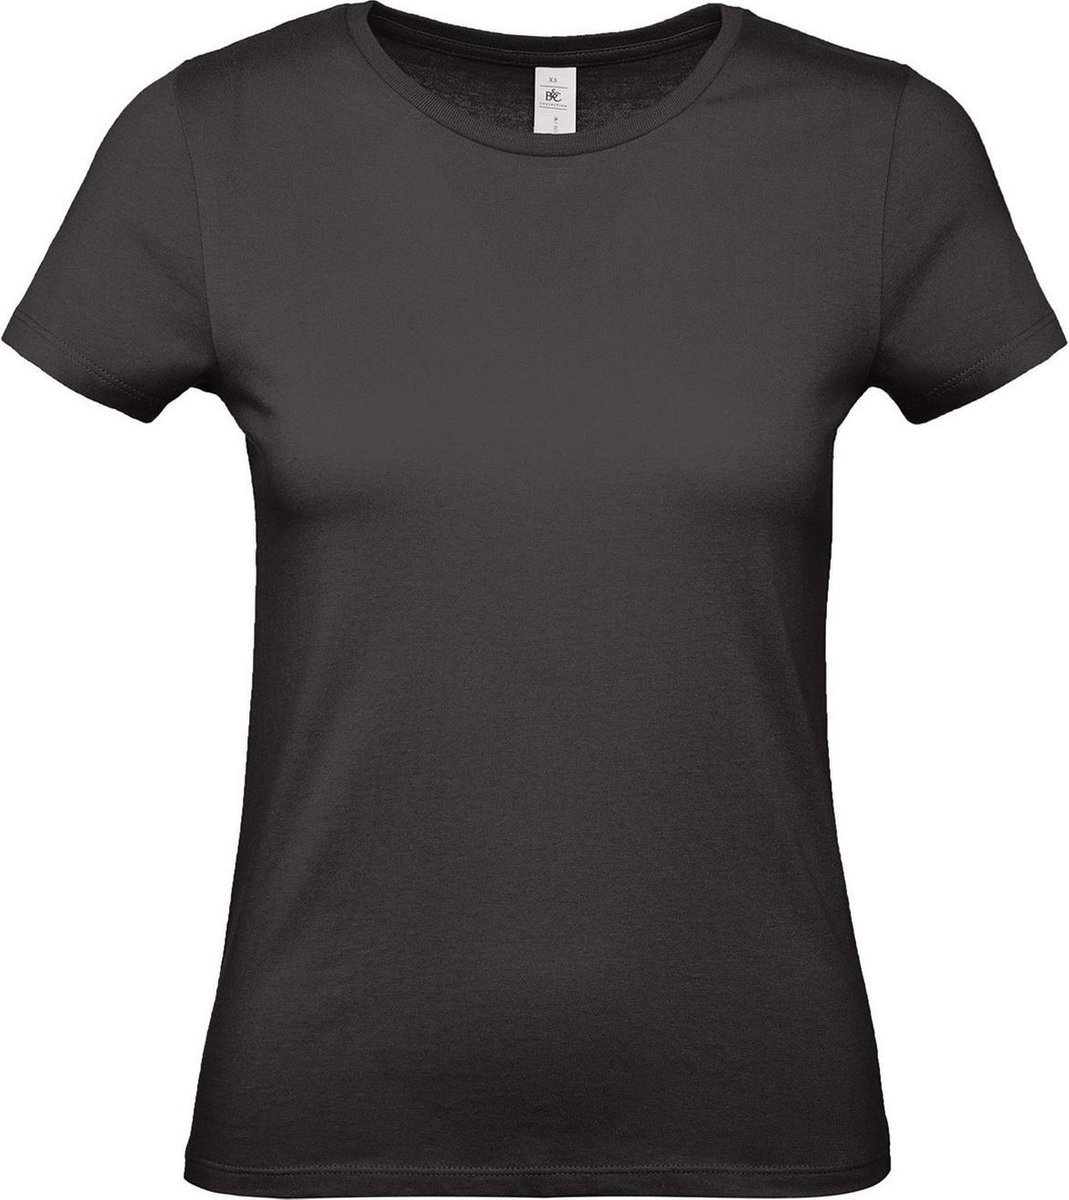 Set van 2x stuks zwart basic t-shirts met ronde hals voor dames - katoen - 145 grams - zwarte shirts / kleding, maat: XS (34)